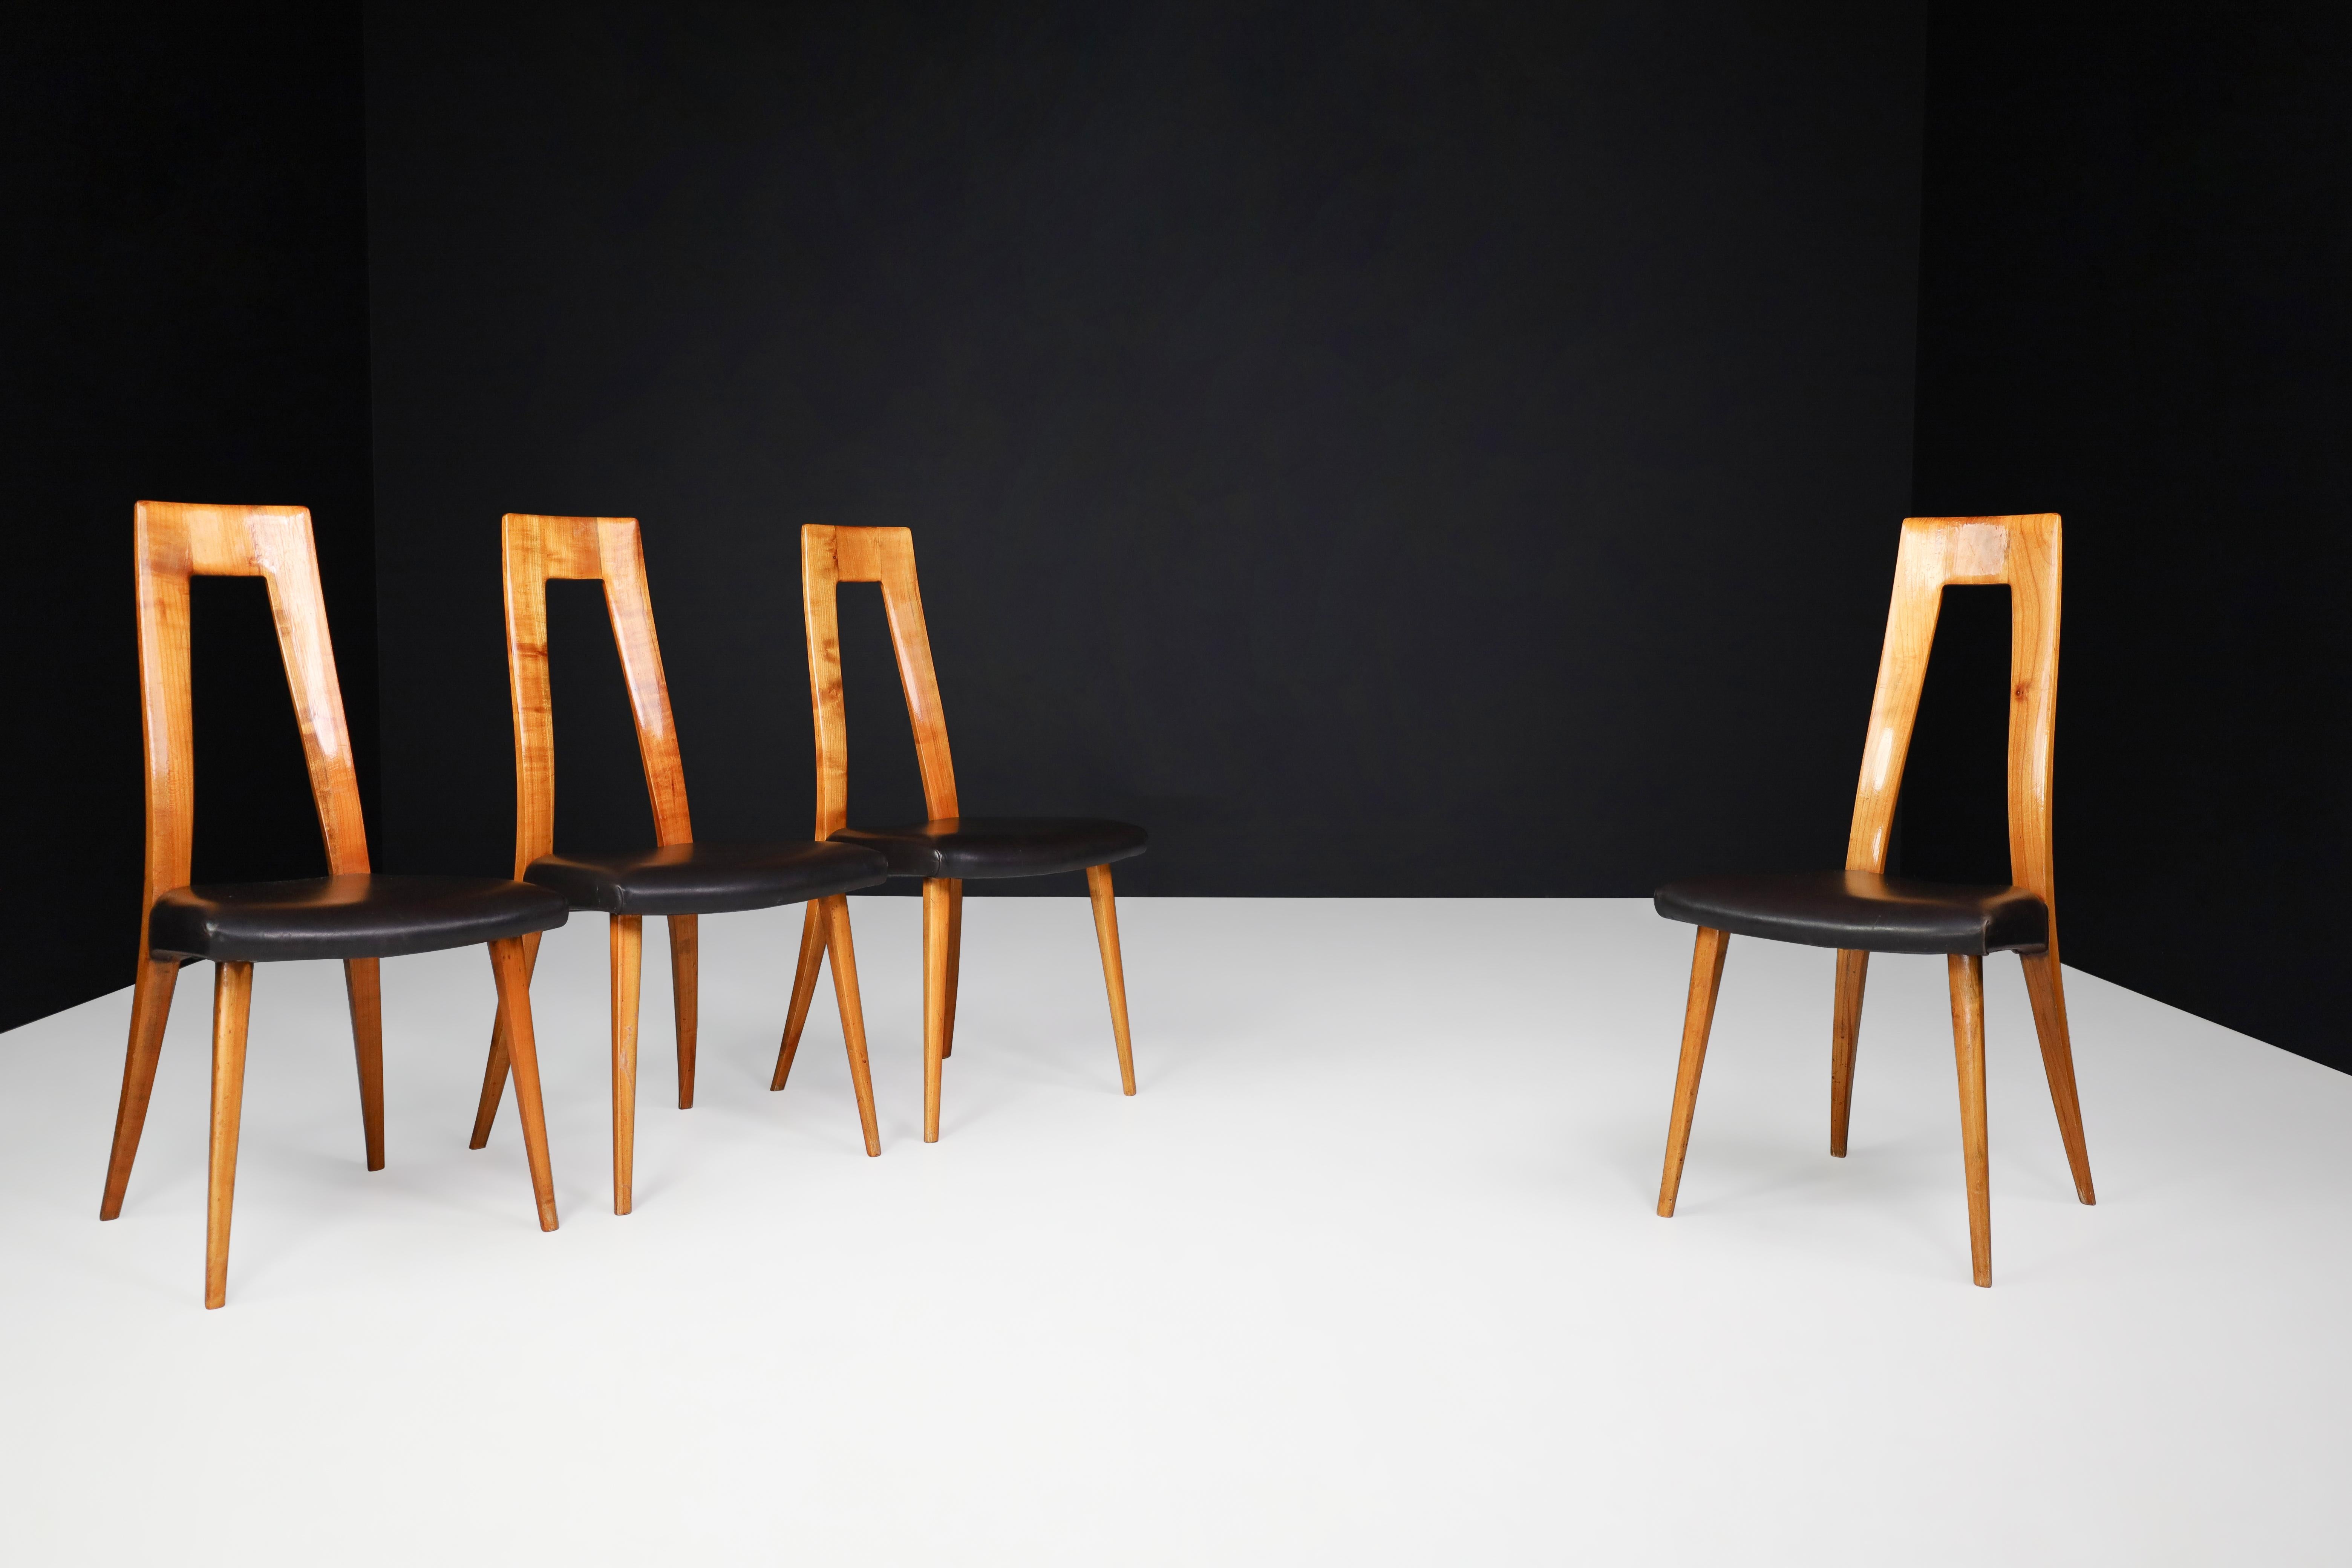 Chaises de salle à manger en cerisier et cuir noir d'Ernst Martin Dettinger, Allemagne, années 1960

Ensemble de quatre pièces en merisier et en bois de cerisier.  Les chaises de salle à manger en cuir noir d'Ernst Martin Dettinger ont été